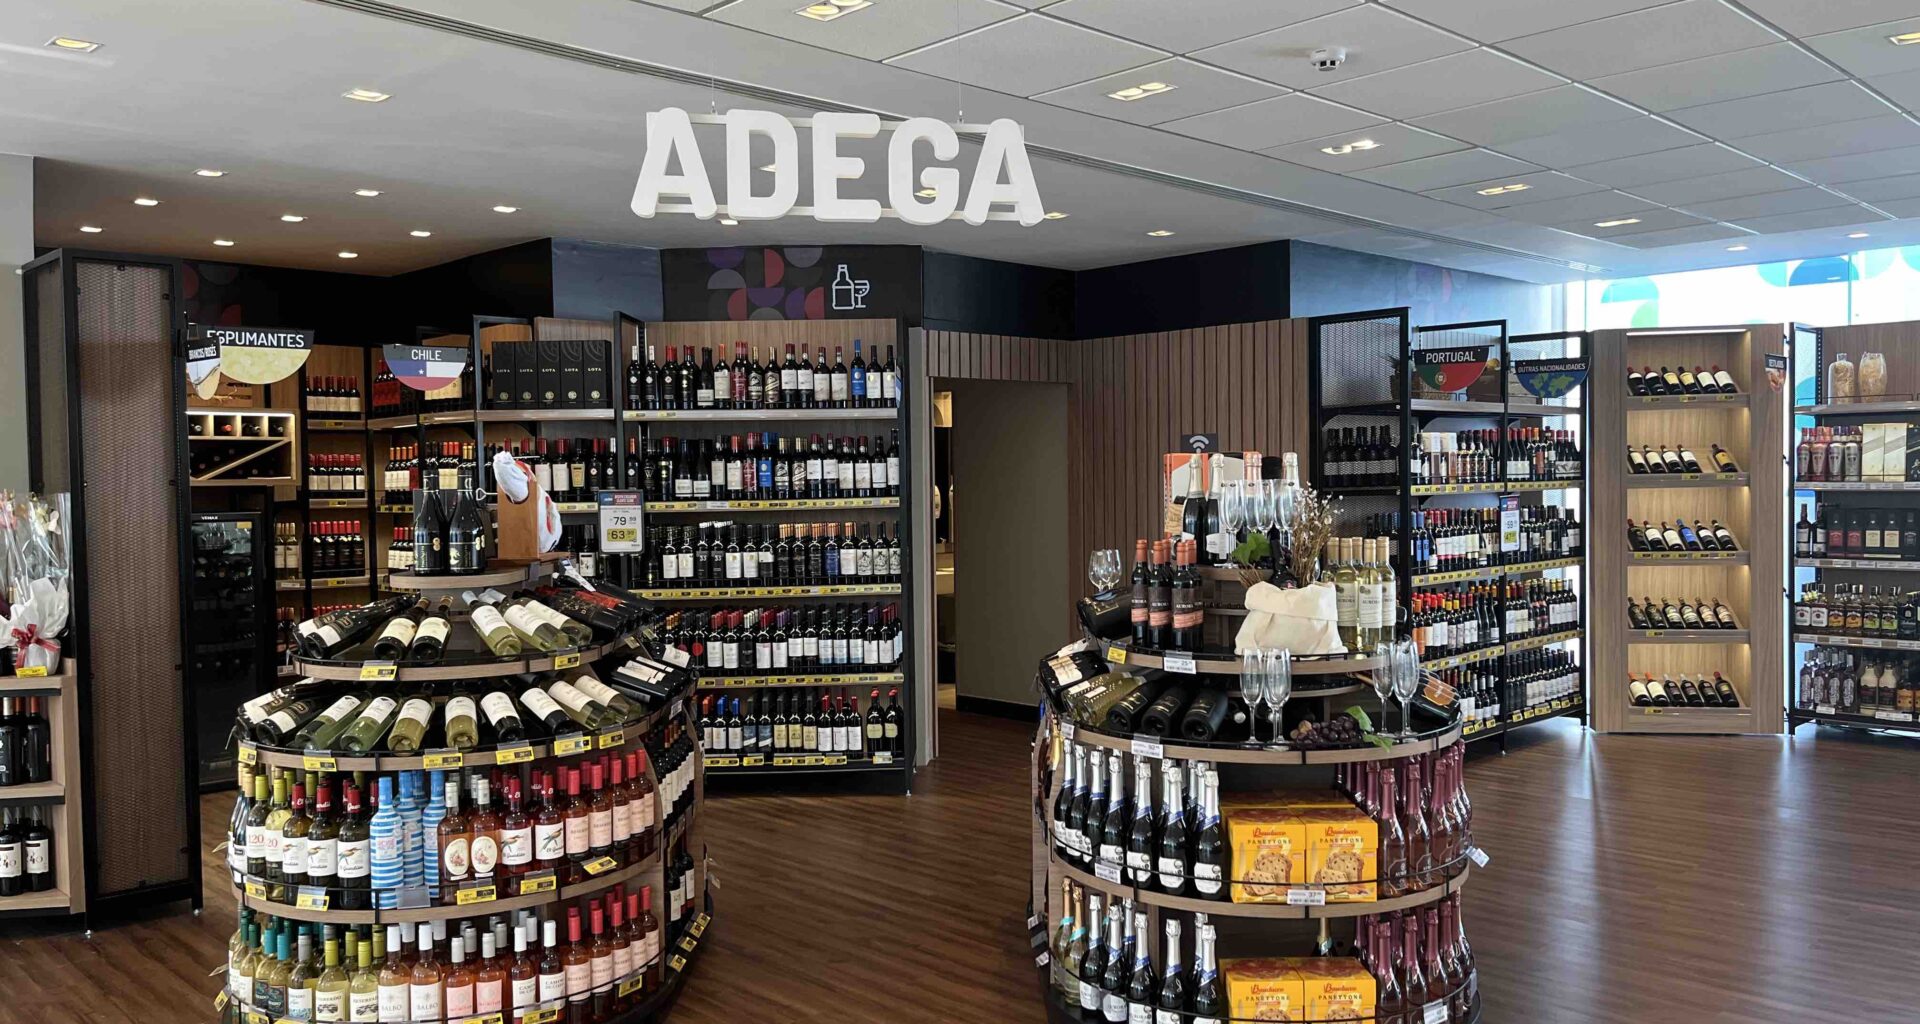 A loja de vinhos da Adega no Aeroporto de Sydney é um destino conveniente para viajantes que procuram comprar vinhos de alta qualidade antes do voo. Com uma vasta selecção de vinhos locais e internacionais, a Adega oferece